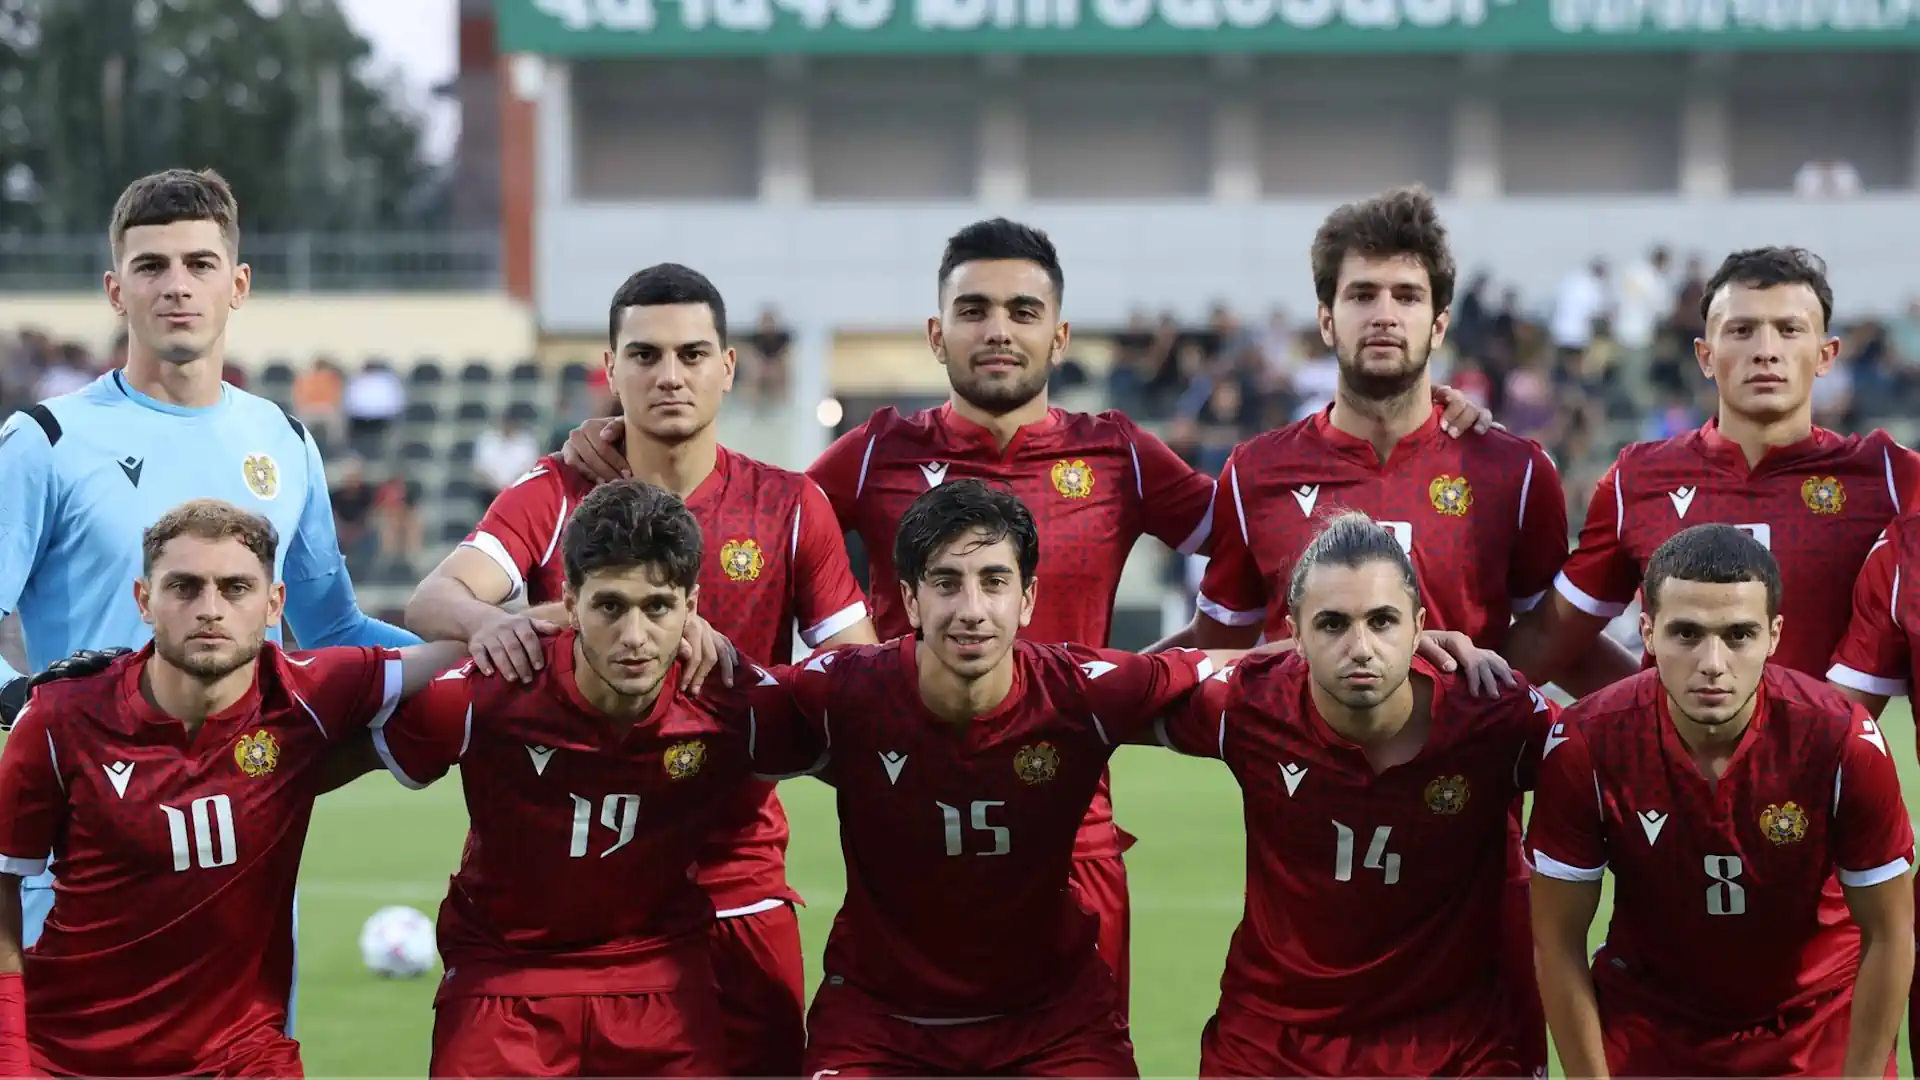 Черногория U21 — Армения U21. Онлайн трансляция матча